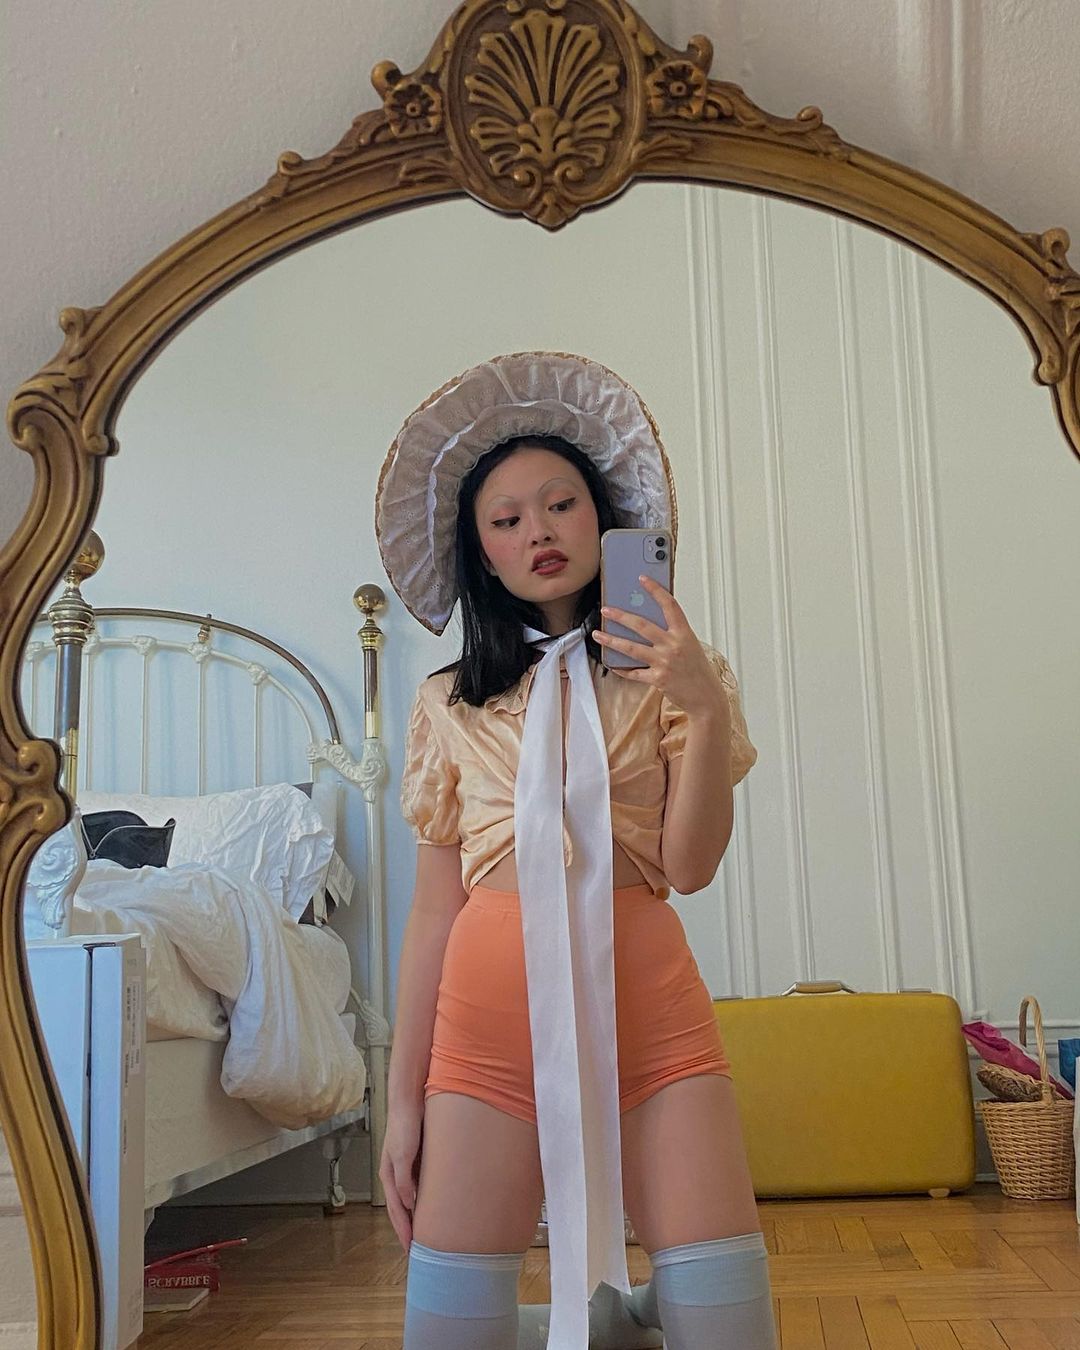 Mina Le và phong cách lolitacore trong bức ảnh Instagram